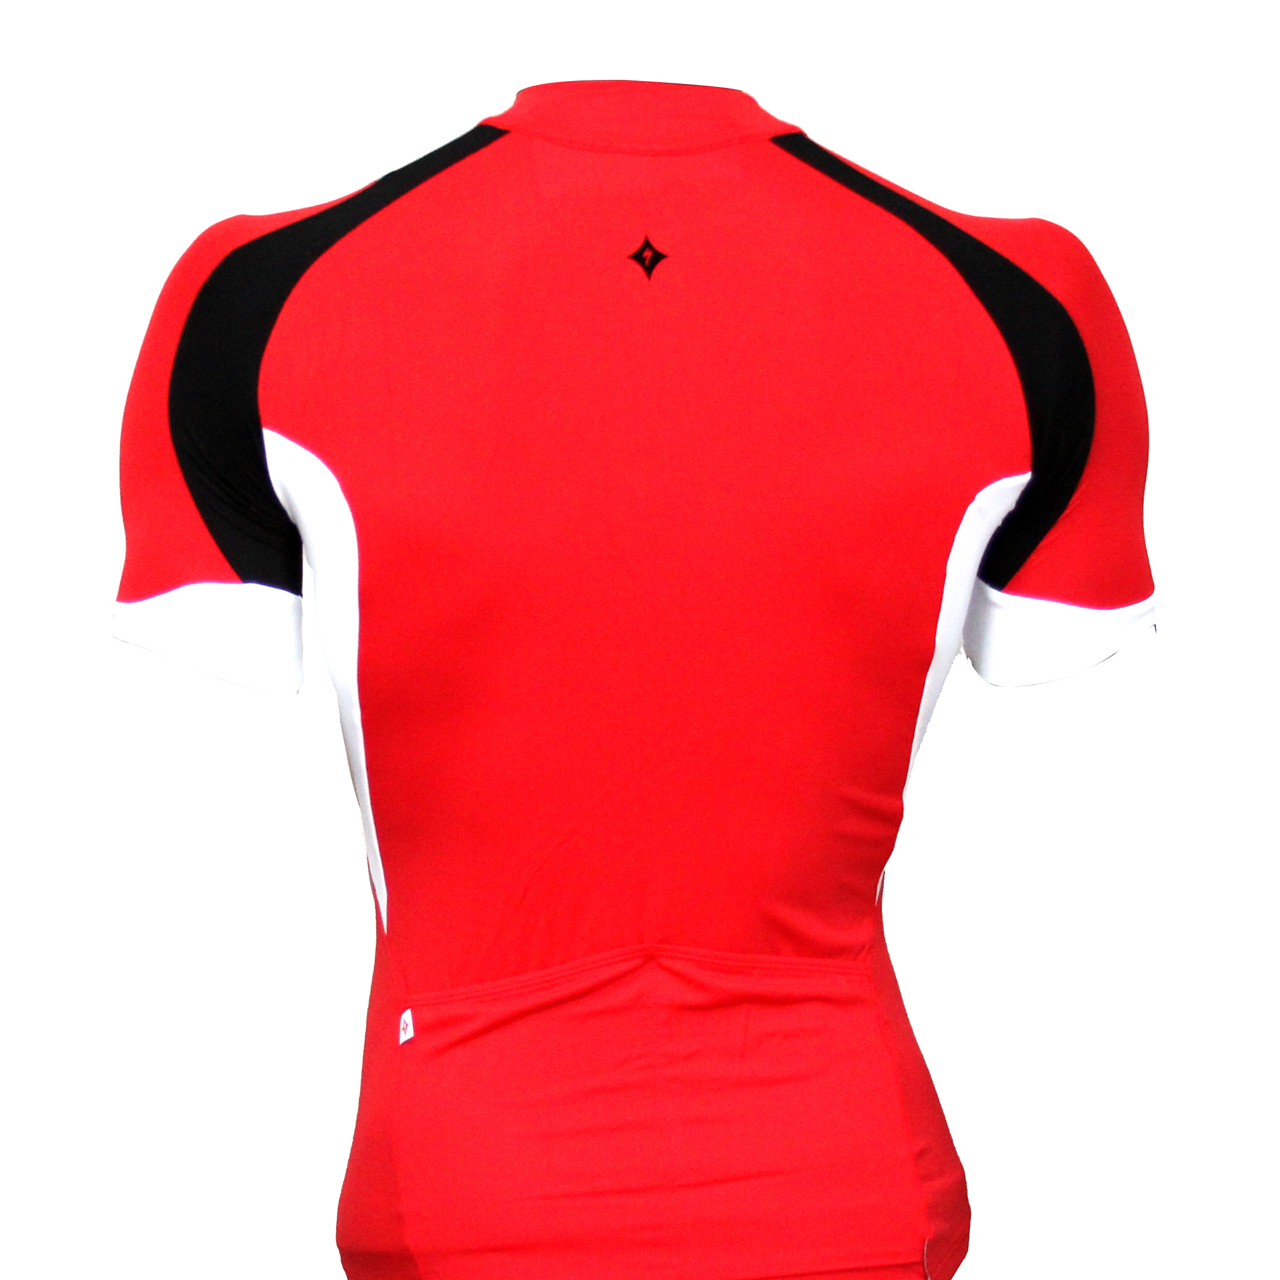 لباس دوچرخه سواری بانوان برند اسپشیالایزد baci S.S رنگ قرمز